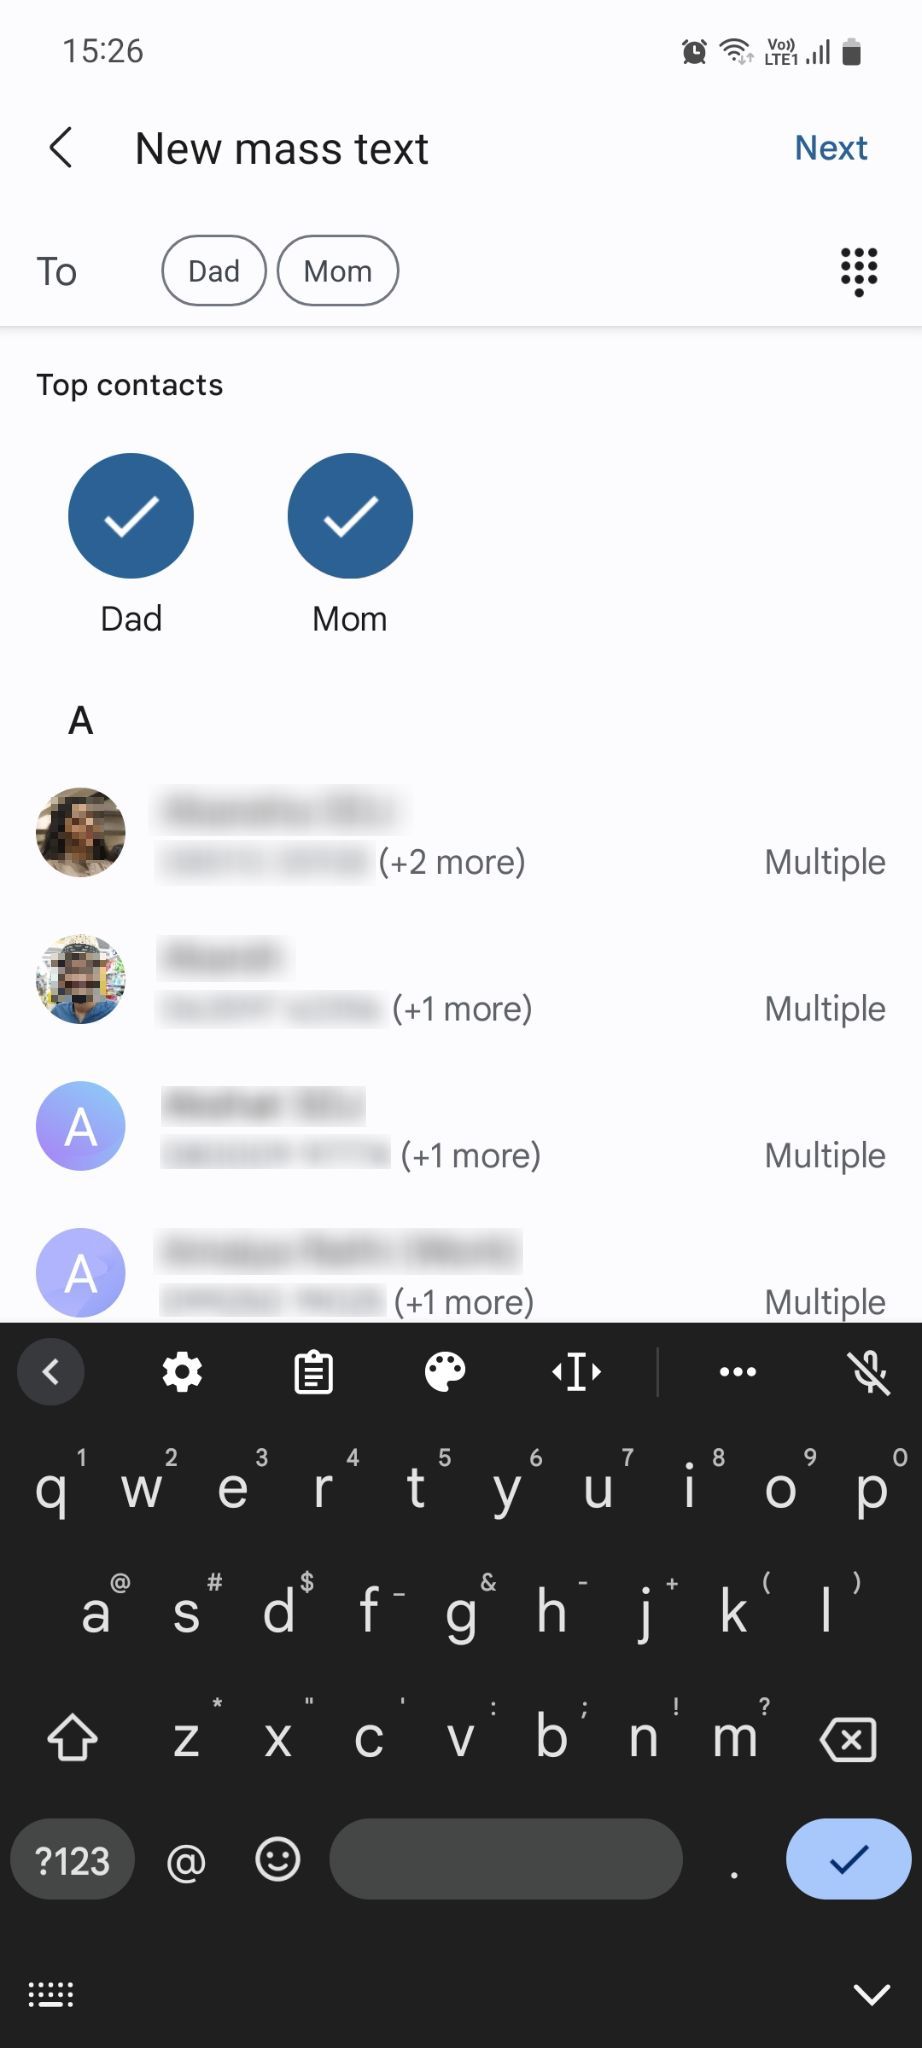 Google Messages New mass text menu